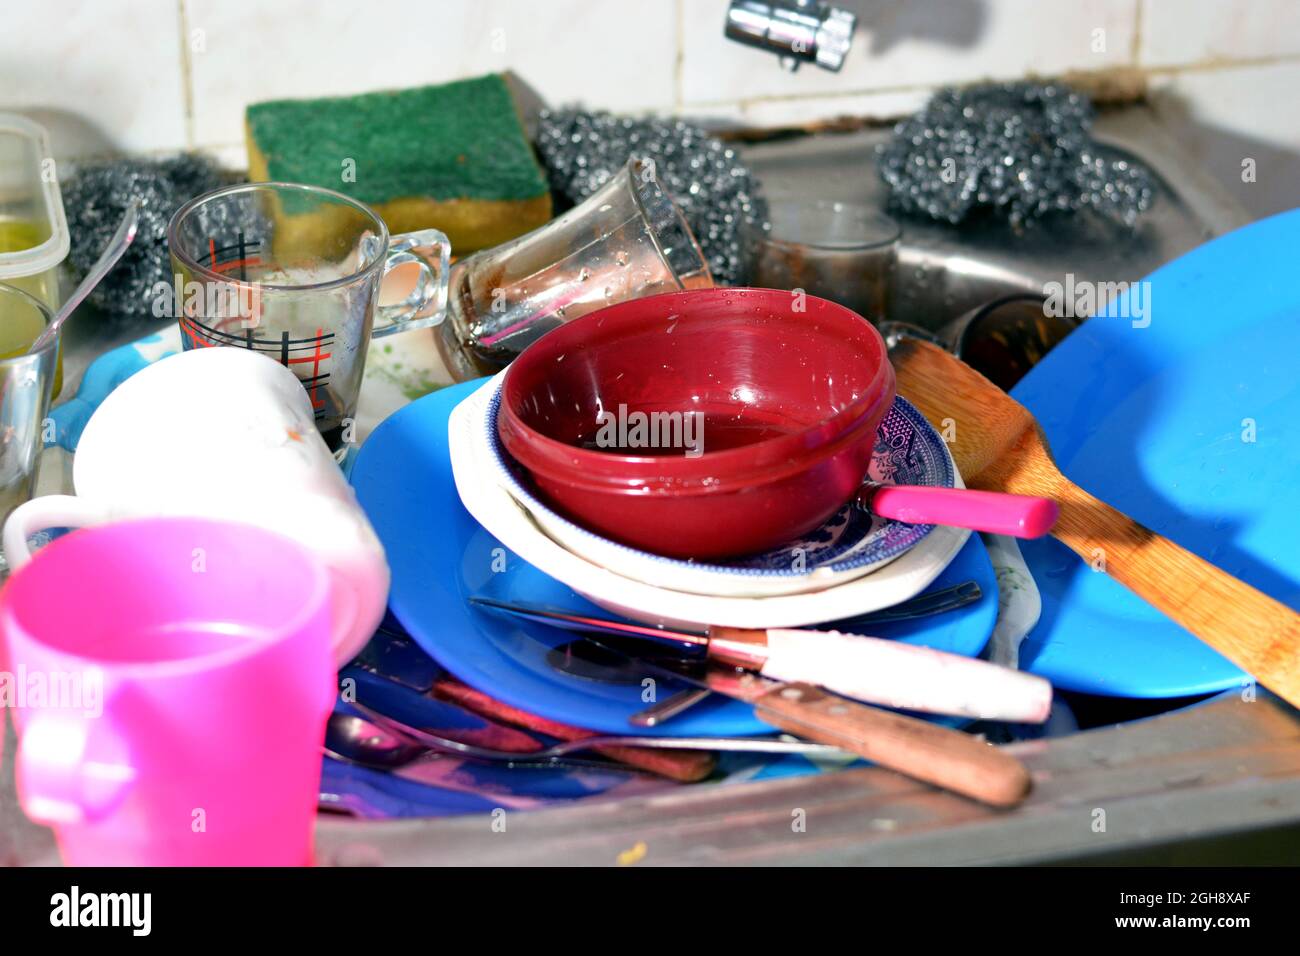 Ungewaschene Küchenutensilien im Waschbecken müssen gereinigt und gewaschen werden, ein Haufen schmutziges Geschirr, Messer, Töpfe und Trinkglas im Spülbecken Stockfoto